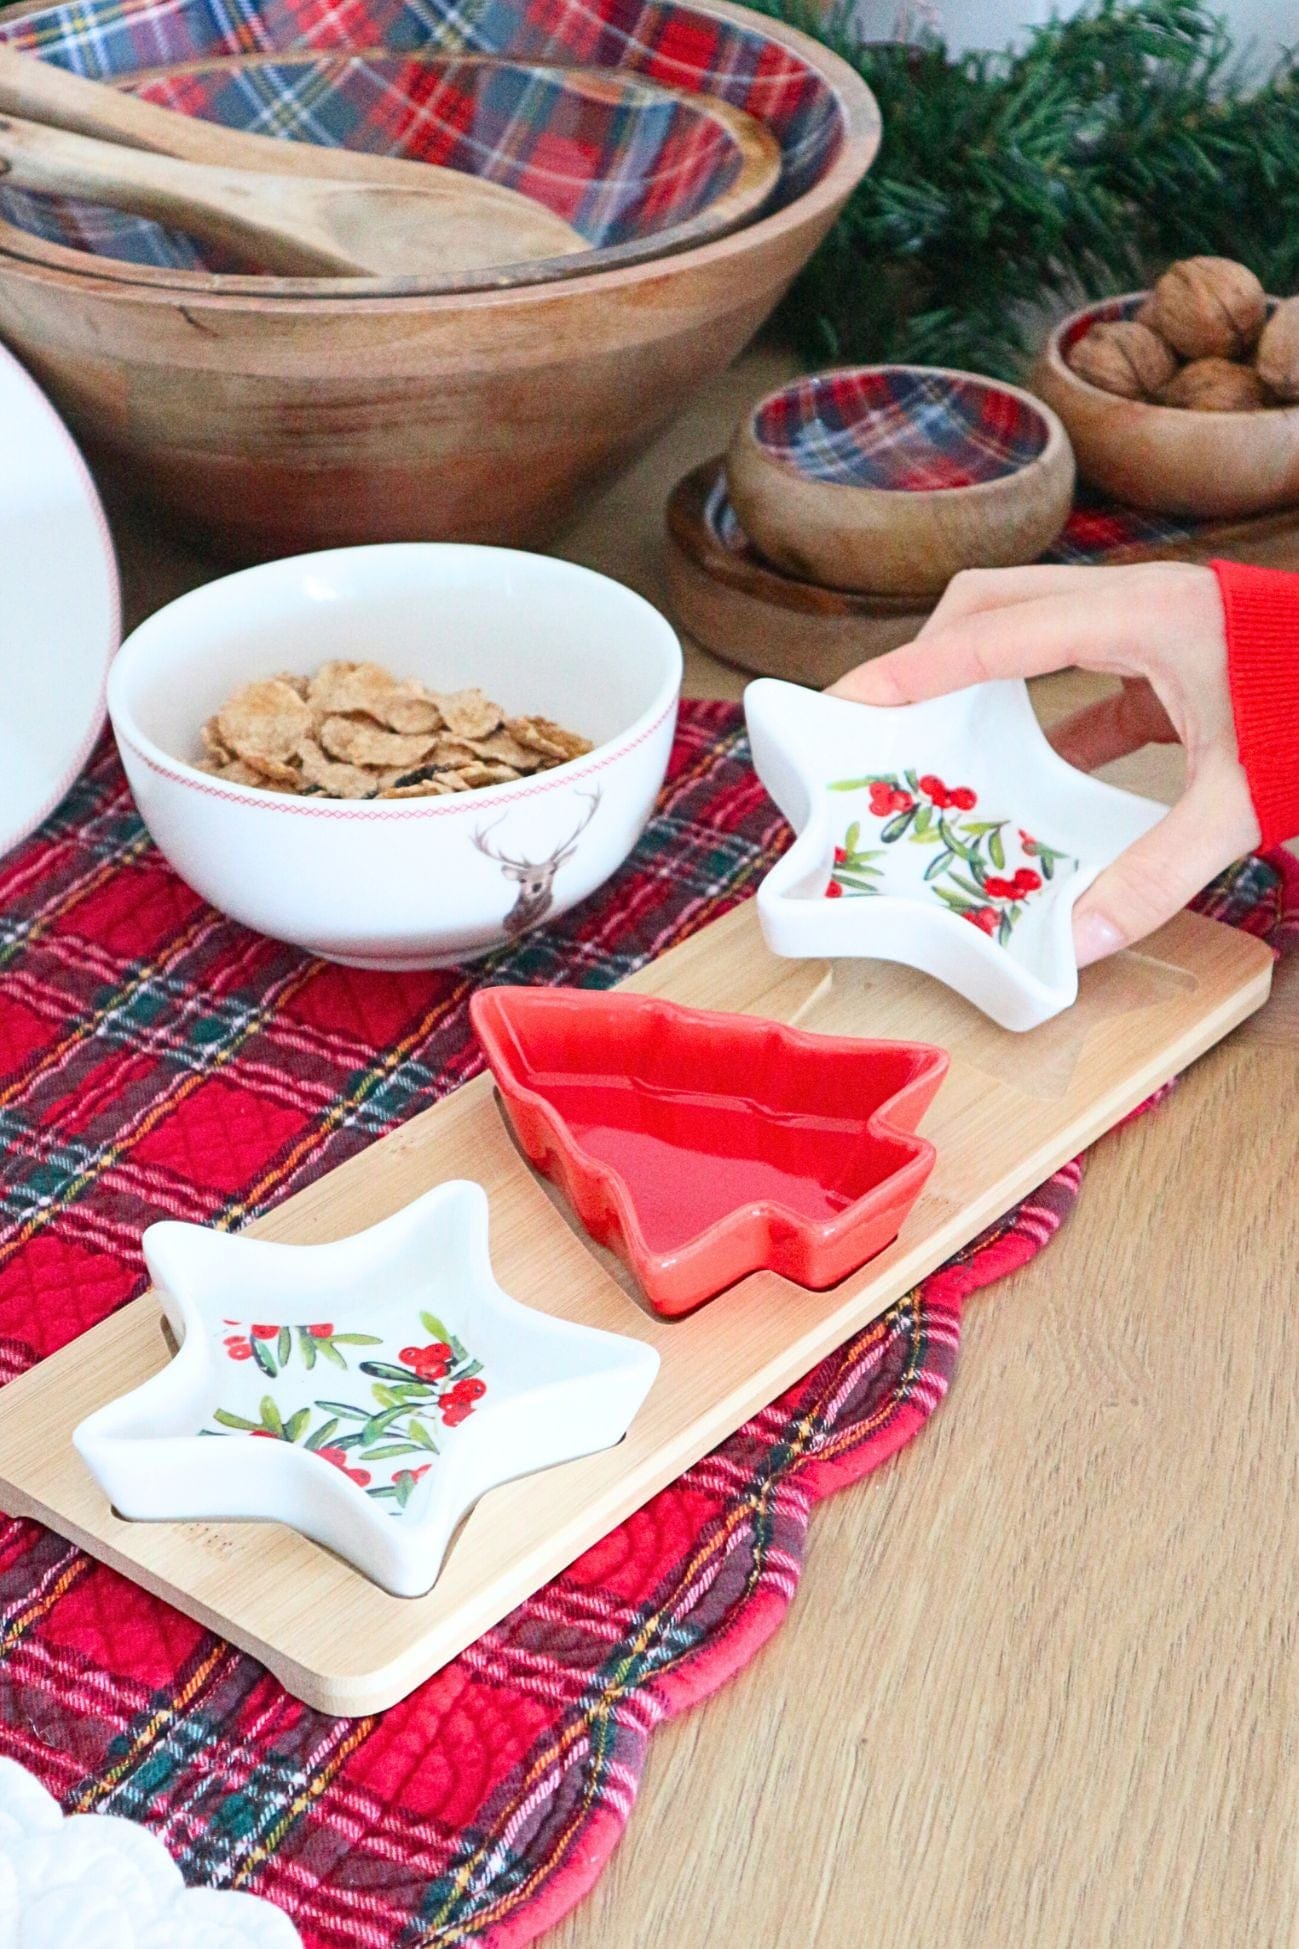 Item International Milad Milad - Set da aperitivo natalizio in ceramica e legno | Item International